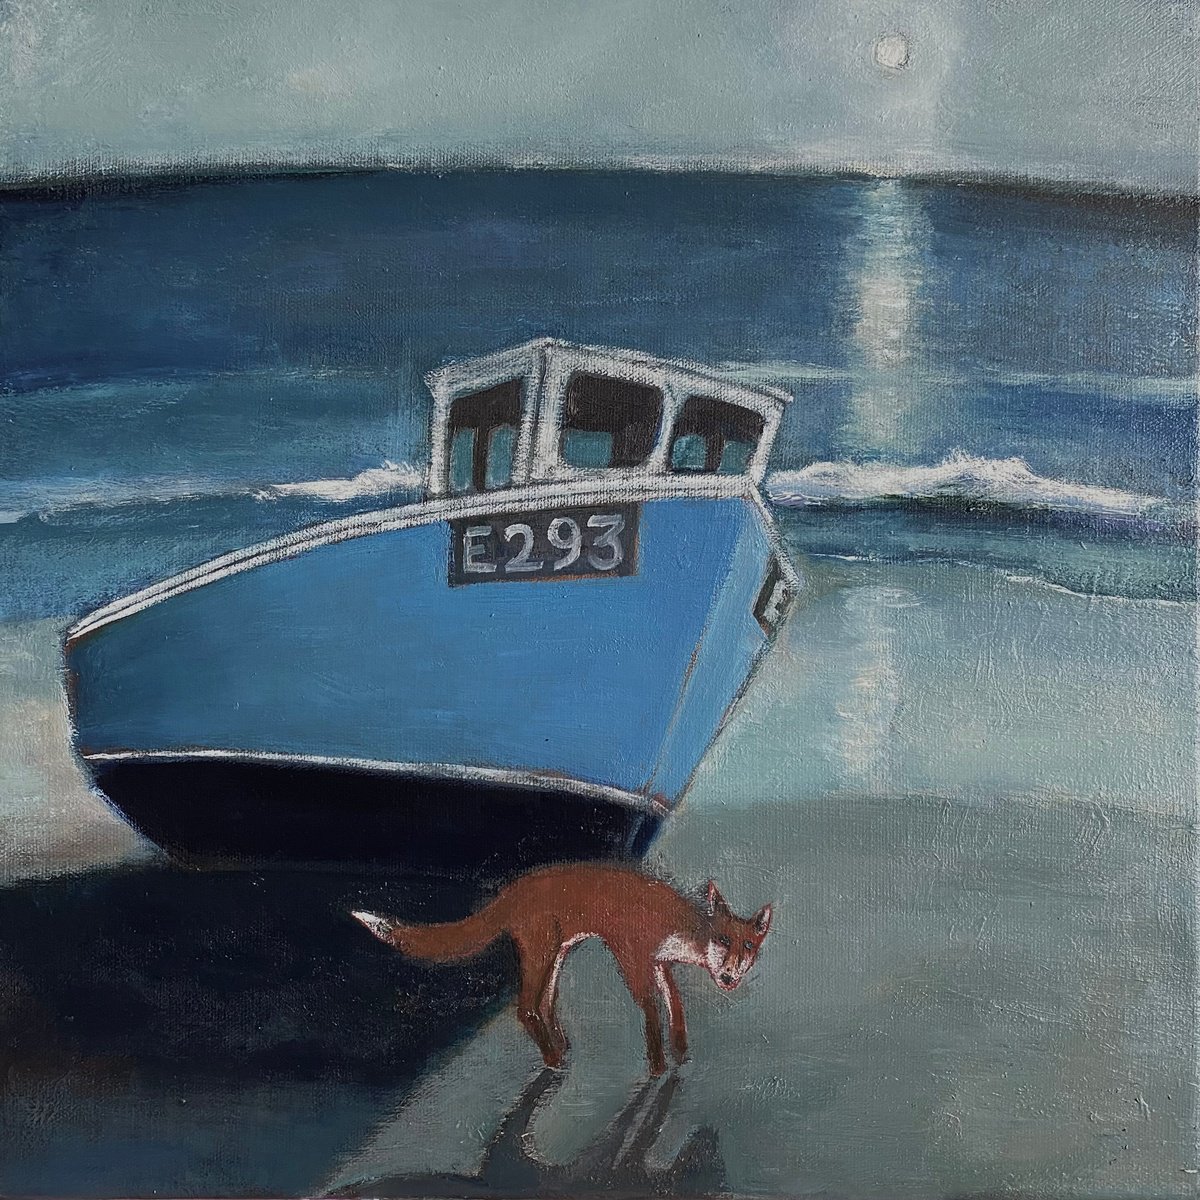 The Fox on the Beach at Dusk by Nigel Sharman